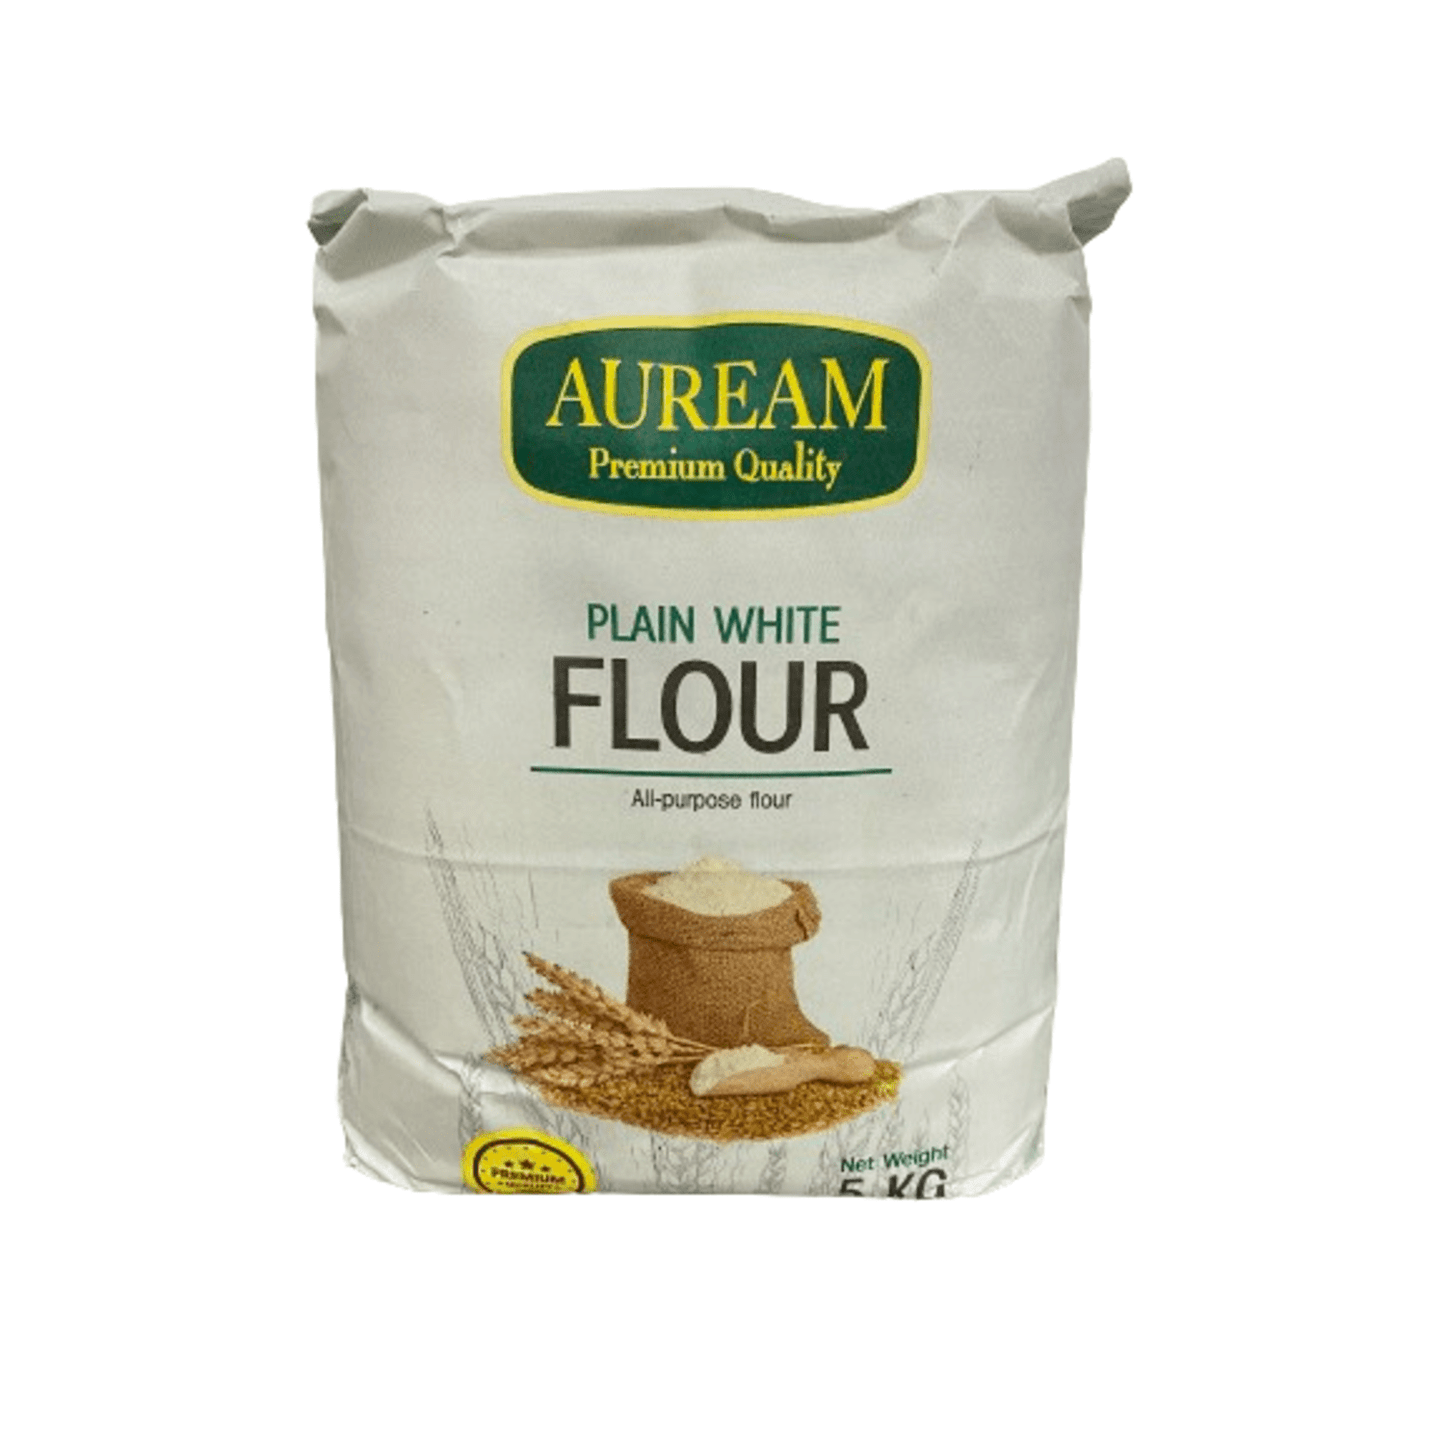 Auream Plain White Flour 5kg